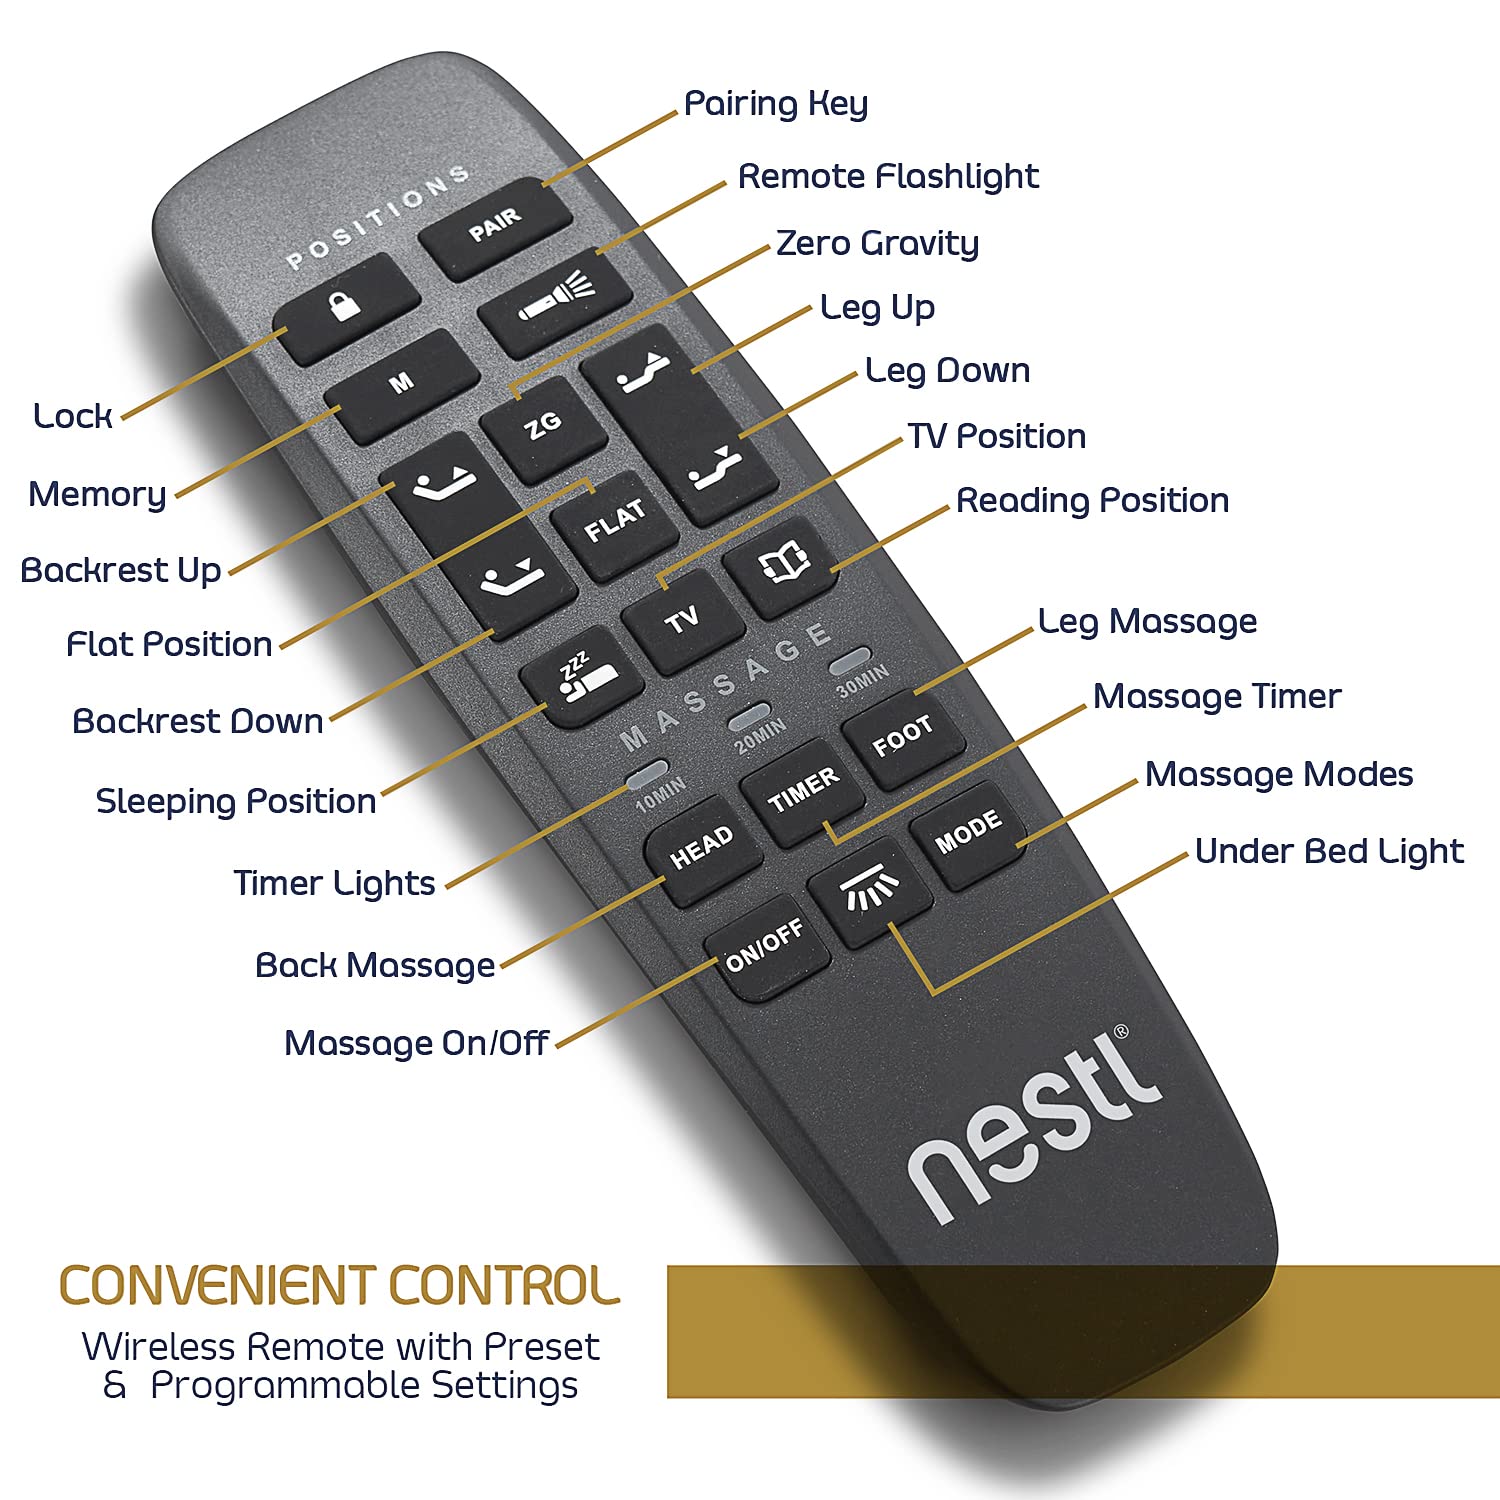 Nestl Adjustable Bed Reviews - Remote Control